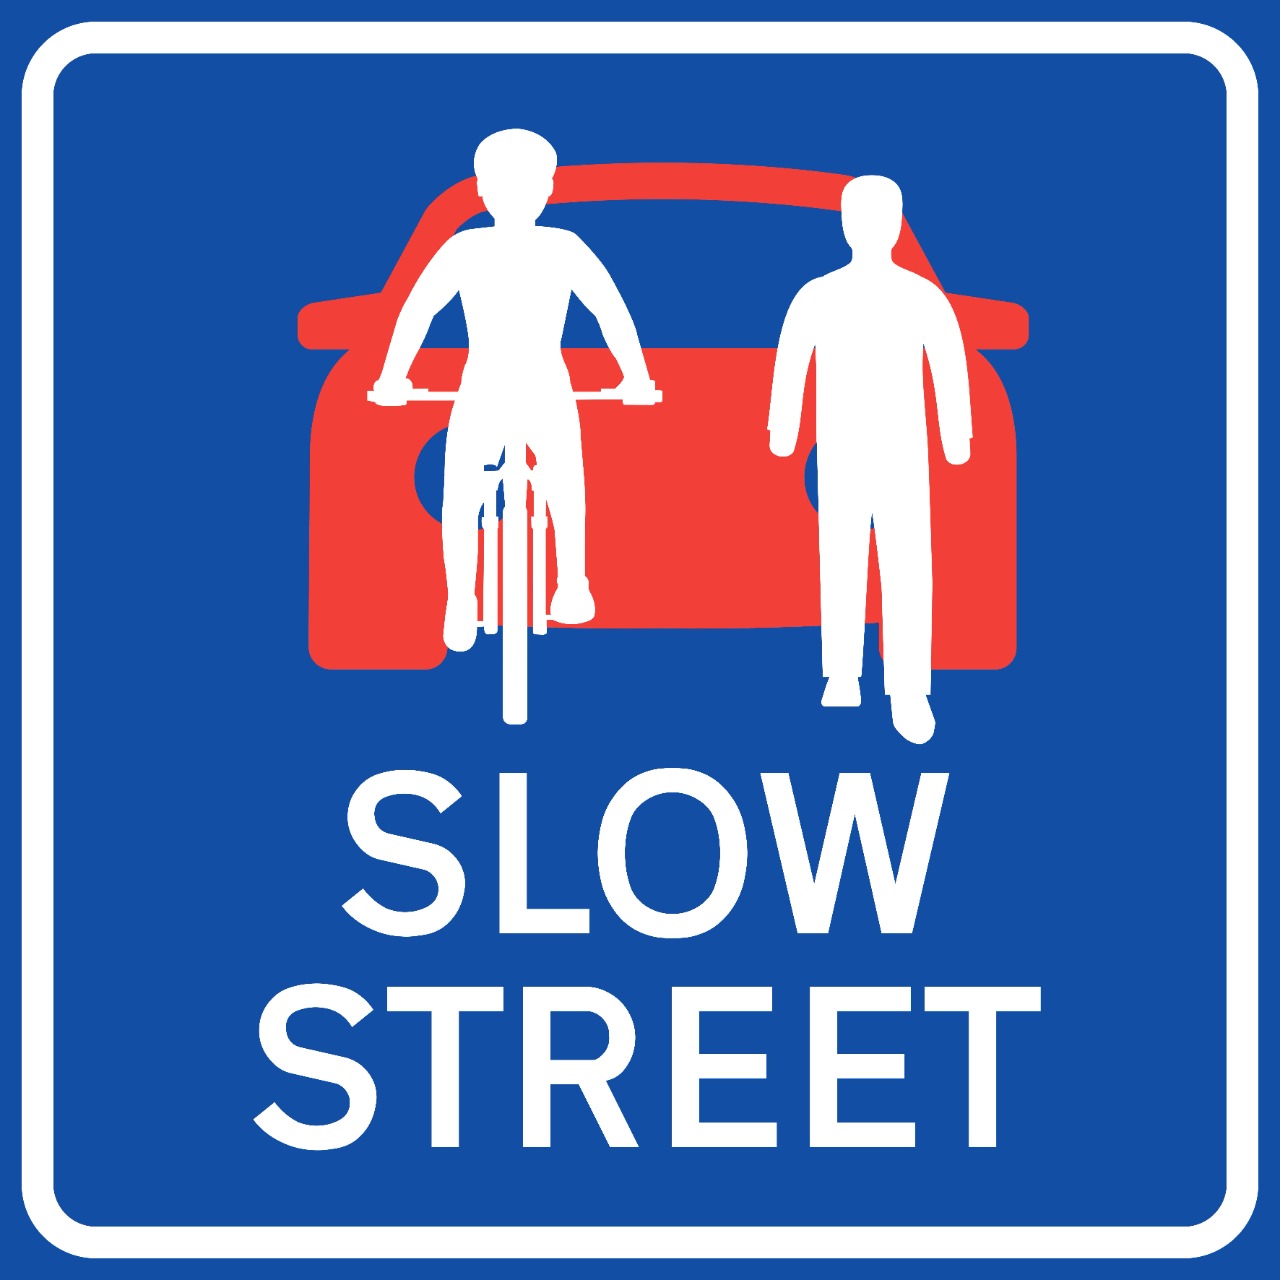 Slow street logo